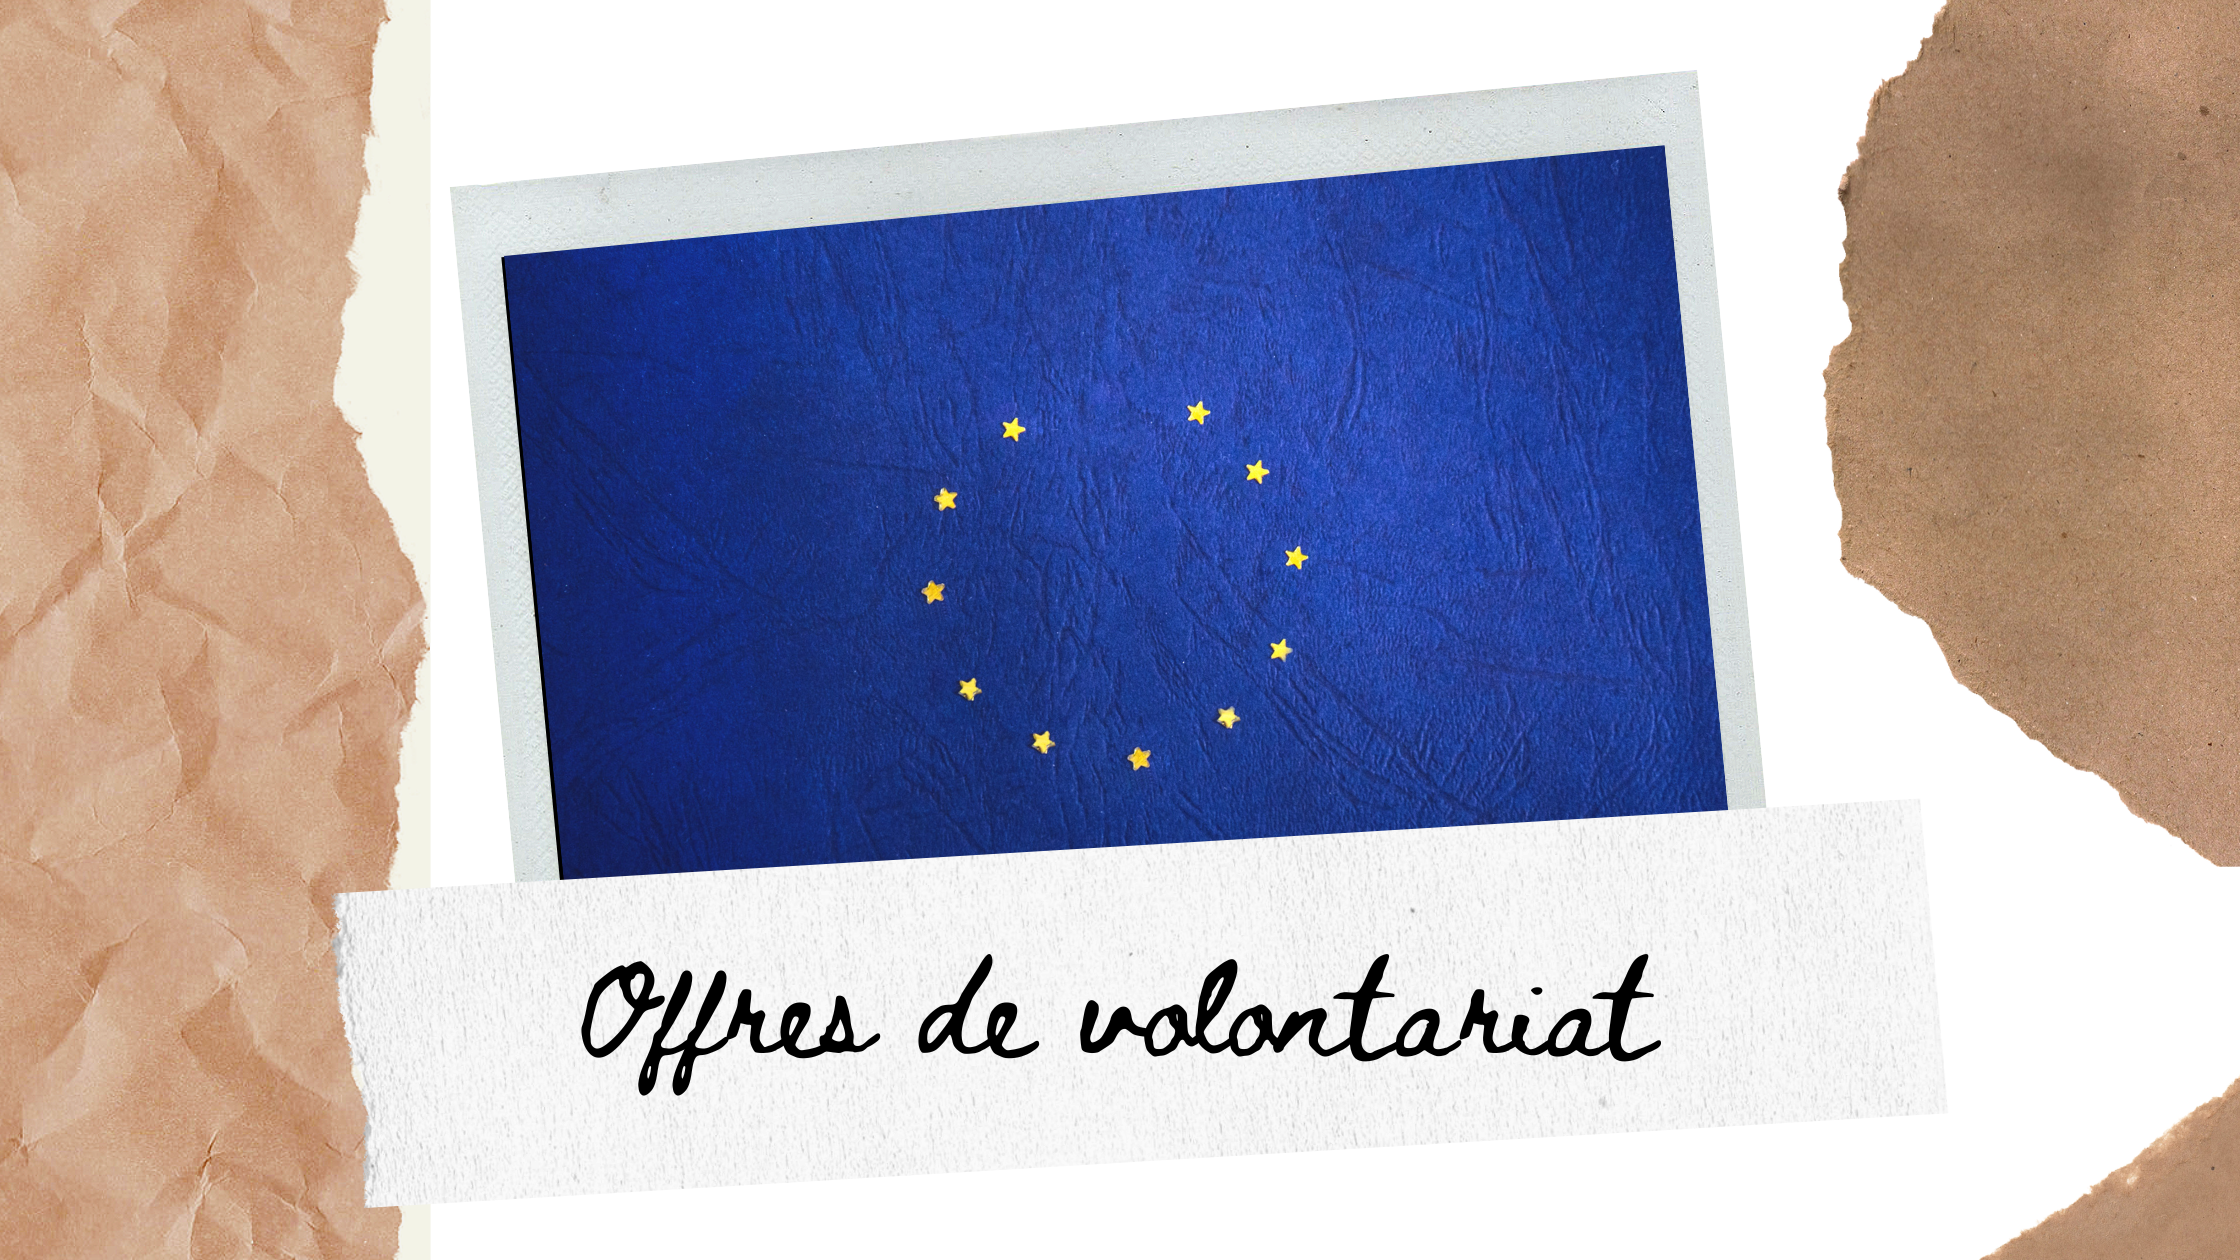 Offres de volontariat en Corps Européen de Solidarité (CES)